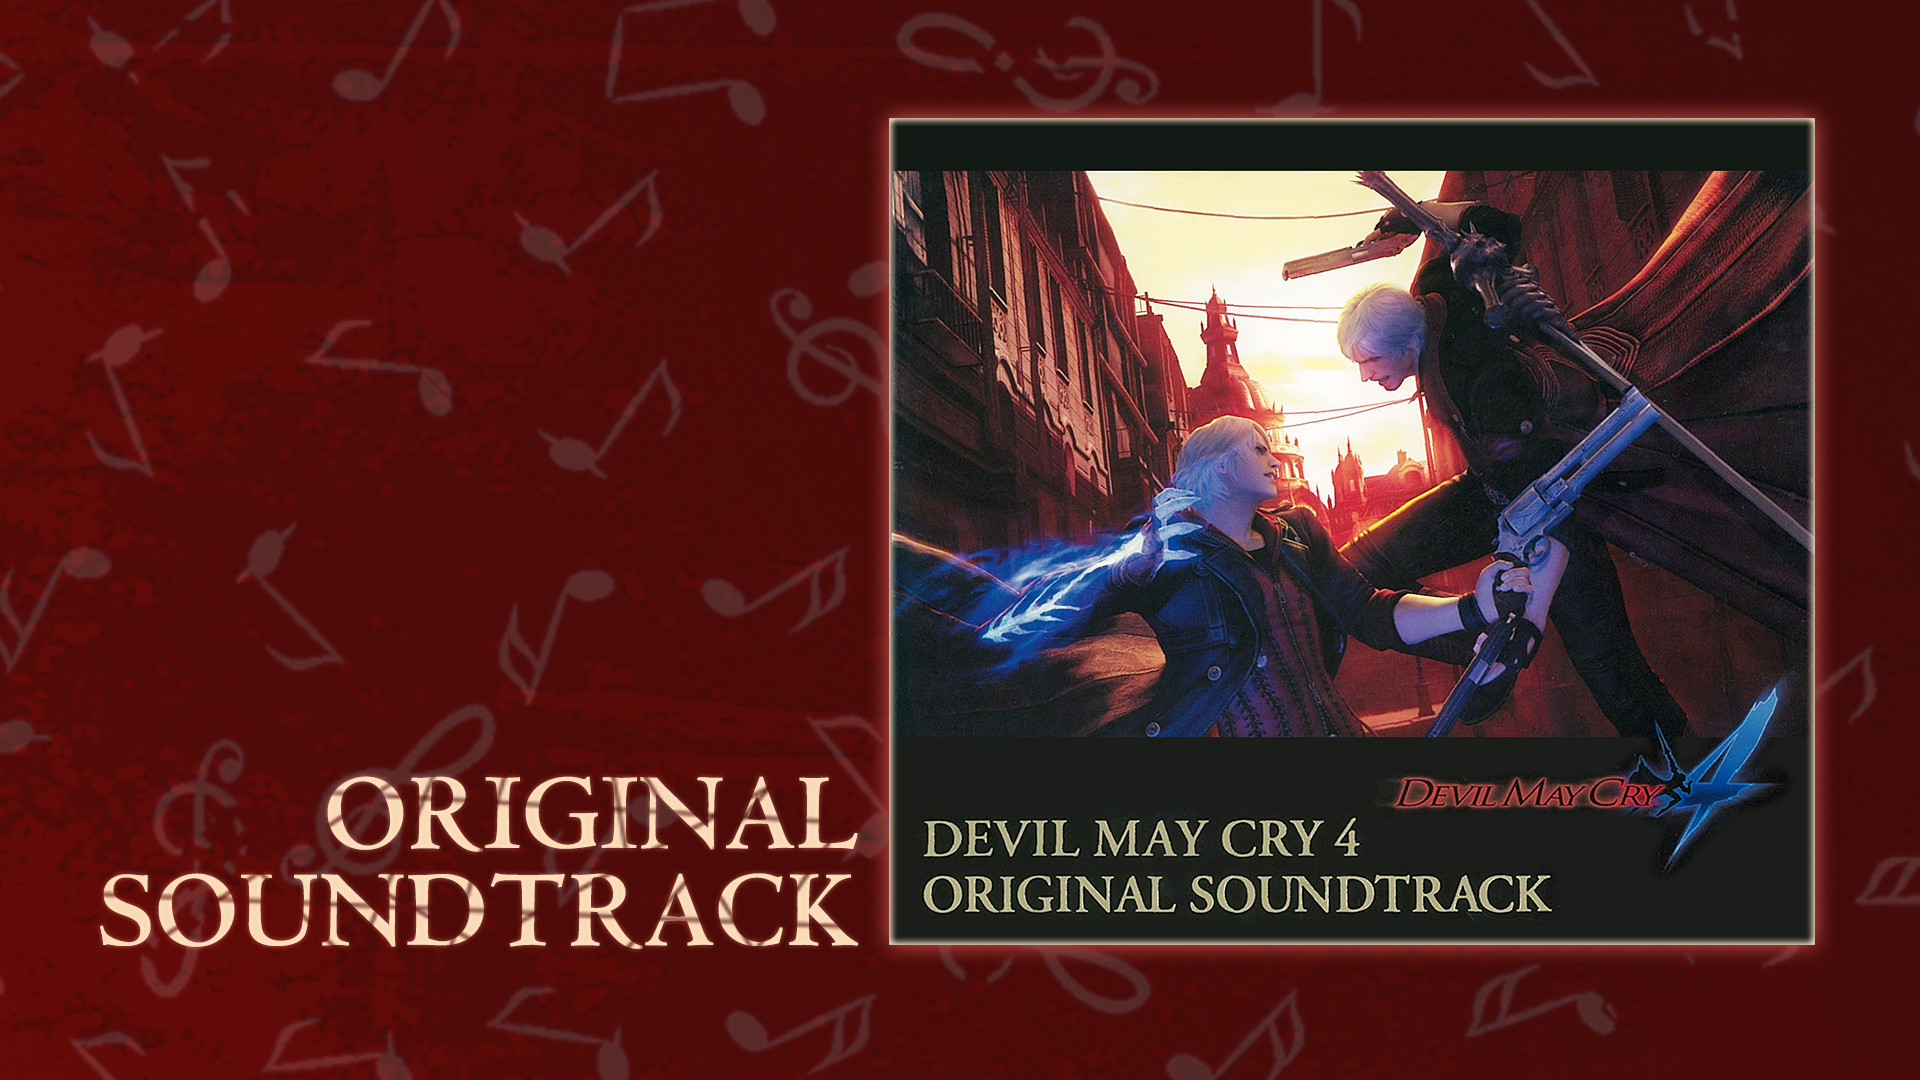 Capcom sound team devil may cry 5 original soundtrack songs Devil May Cry 4 Original Soundtrack On Steam